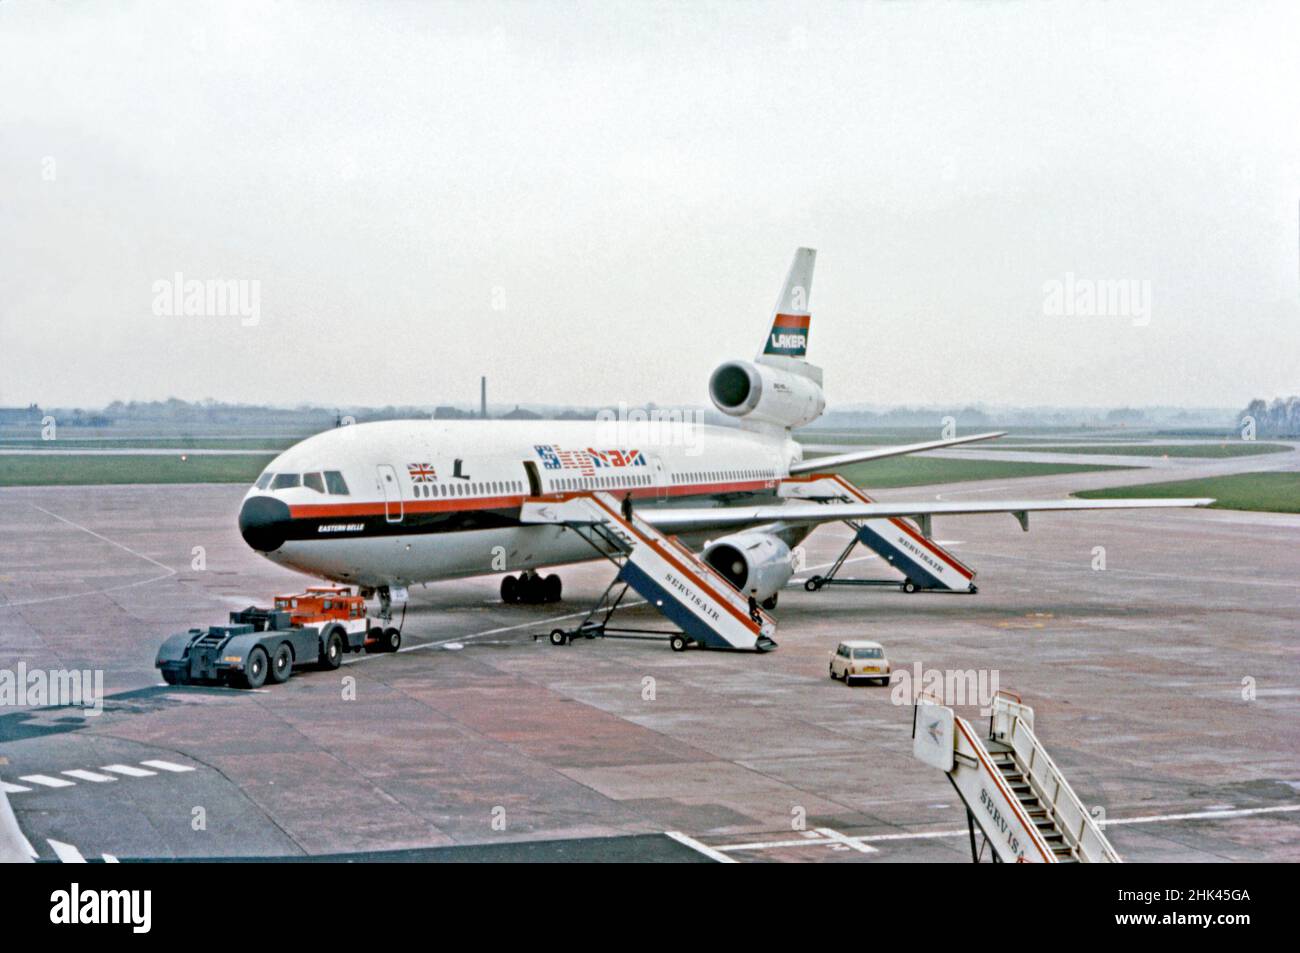 Un “Skytrain” de Laker Airways McDonnell Douglas DC-10 nombrado “Eastern Belle” en el aeropuerto de Manchester, Inglaterra, Reino Unido en 1973. Laker Airways fue una aerolínea británica privada fundada por Sir Freddie Laker en 1966. Laker voló el primer vuelo transatlántico «ABC» (carta de reserva anticipada) del mundo en abril de 1973 desde Manchester a Toronto utilizando un «Skytrain» DC-10. Fue pionero en la era de la tarifa baja sin florituras y fue inicialmente exitoso. Otras aerolíneas más grandes bajaron sus tarifas para competir y Laker entró en quiebra en 1982. Esta imagen proviene de una antigua transparencia de color amateur, una fotografía vintage de 1970s. Foto de stock